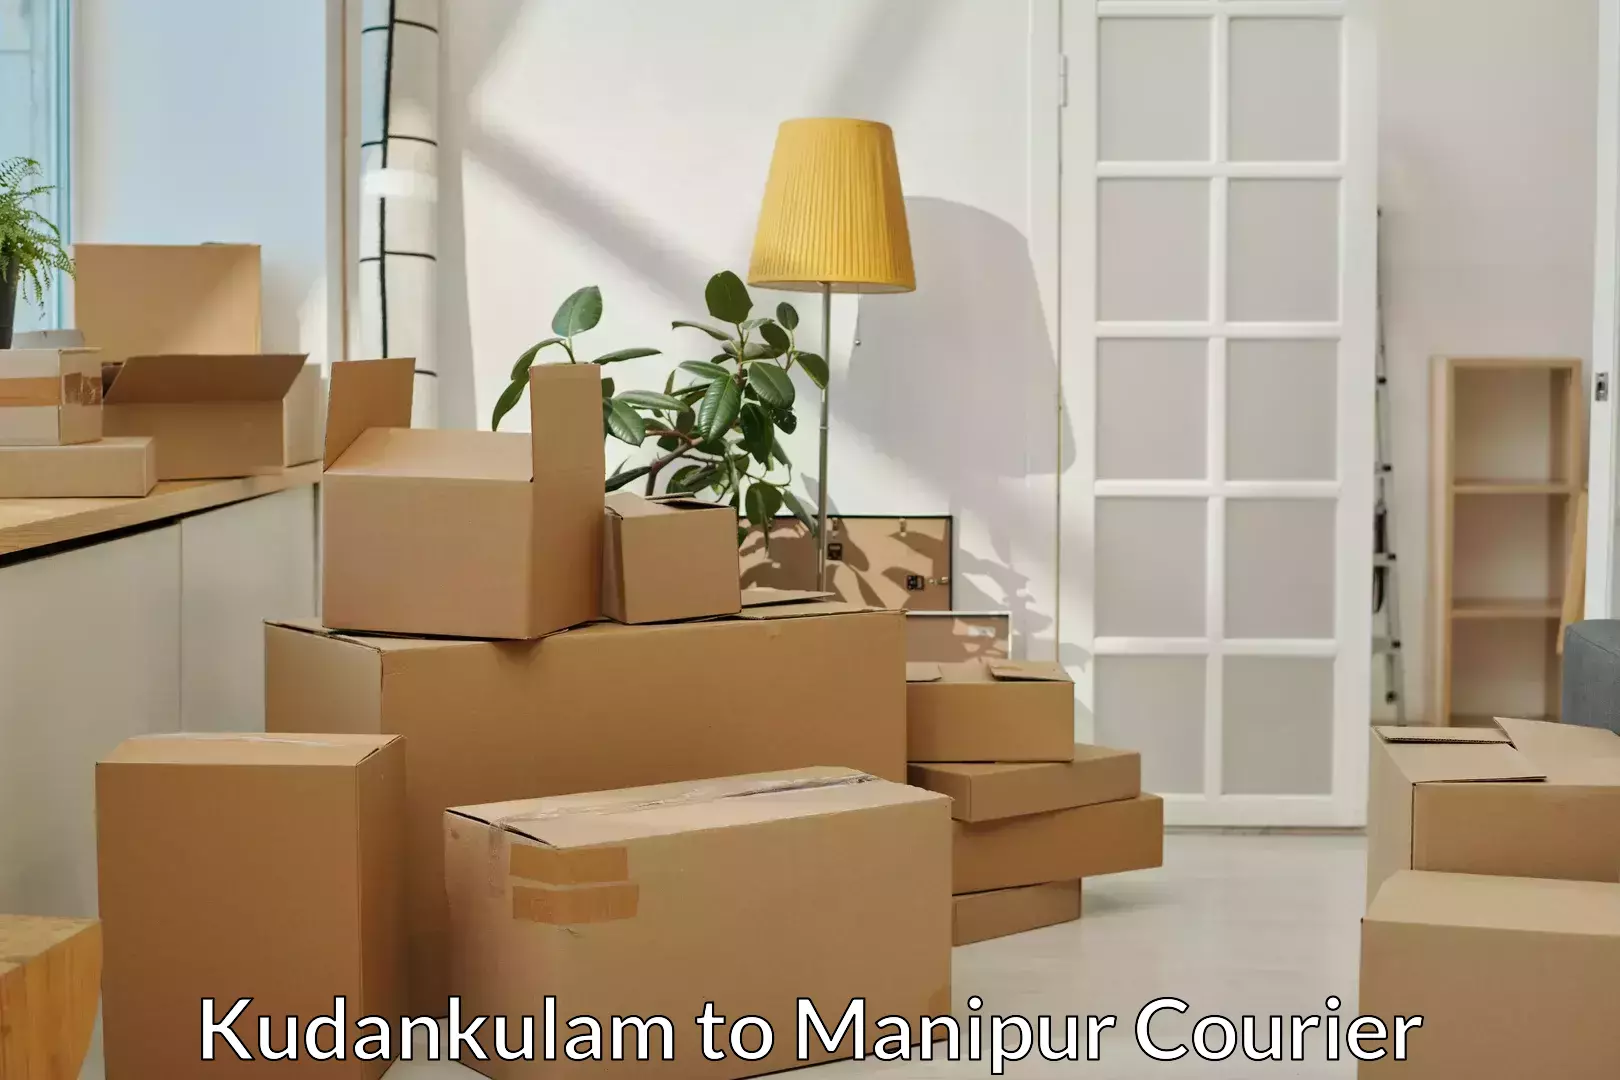 Skilled furniture transporters Kudankulam to Manipur